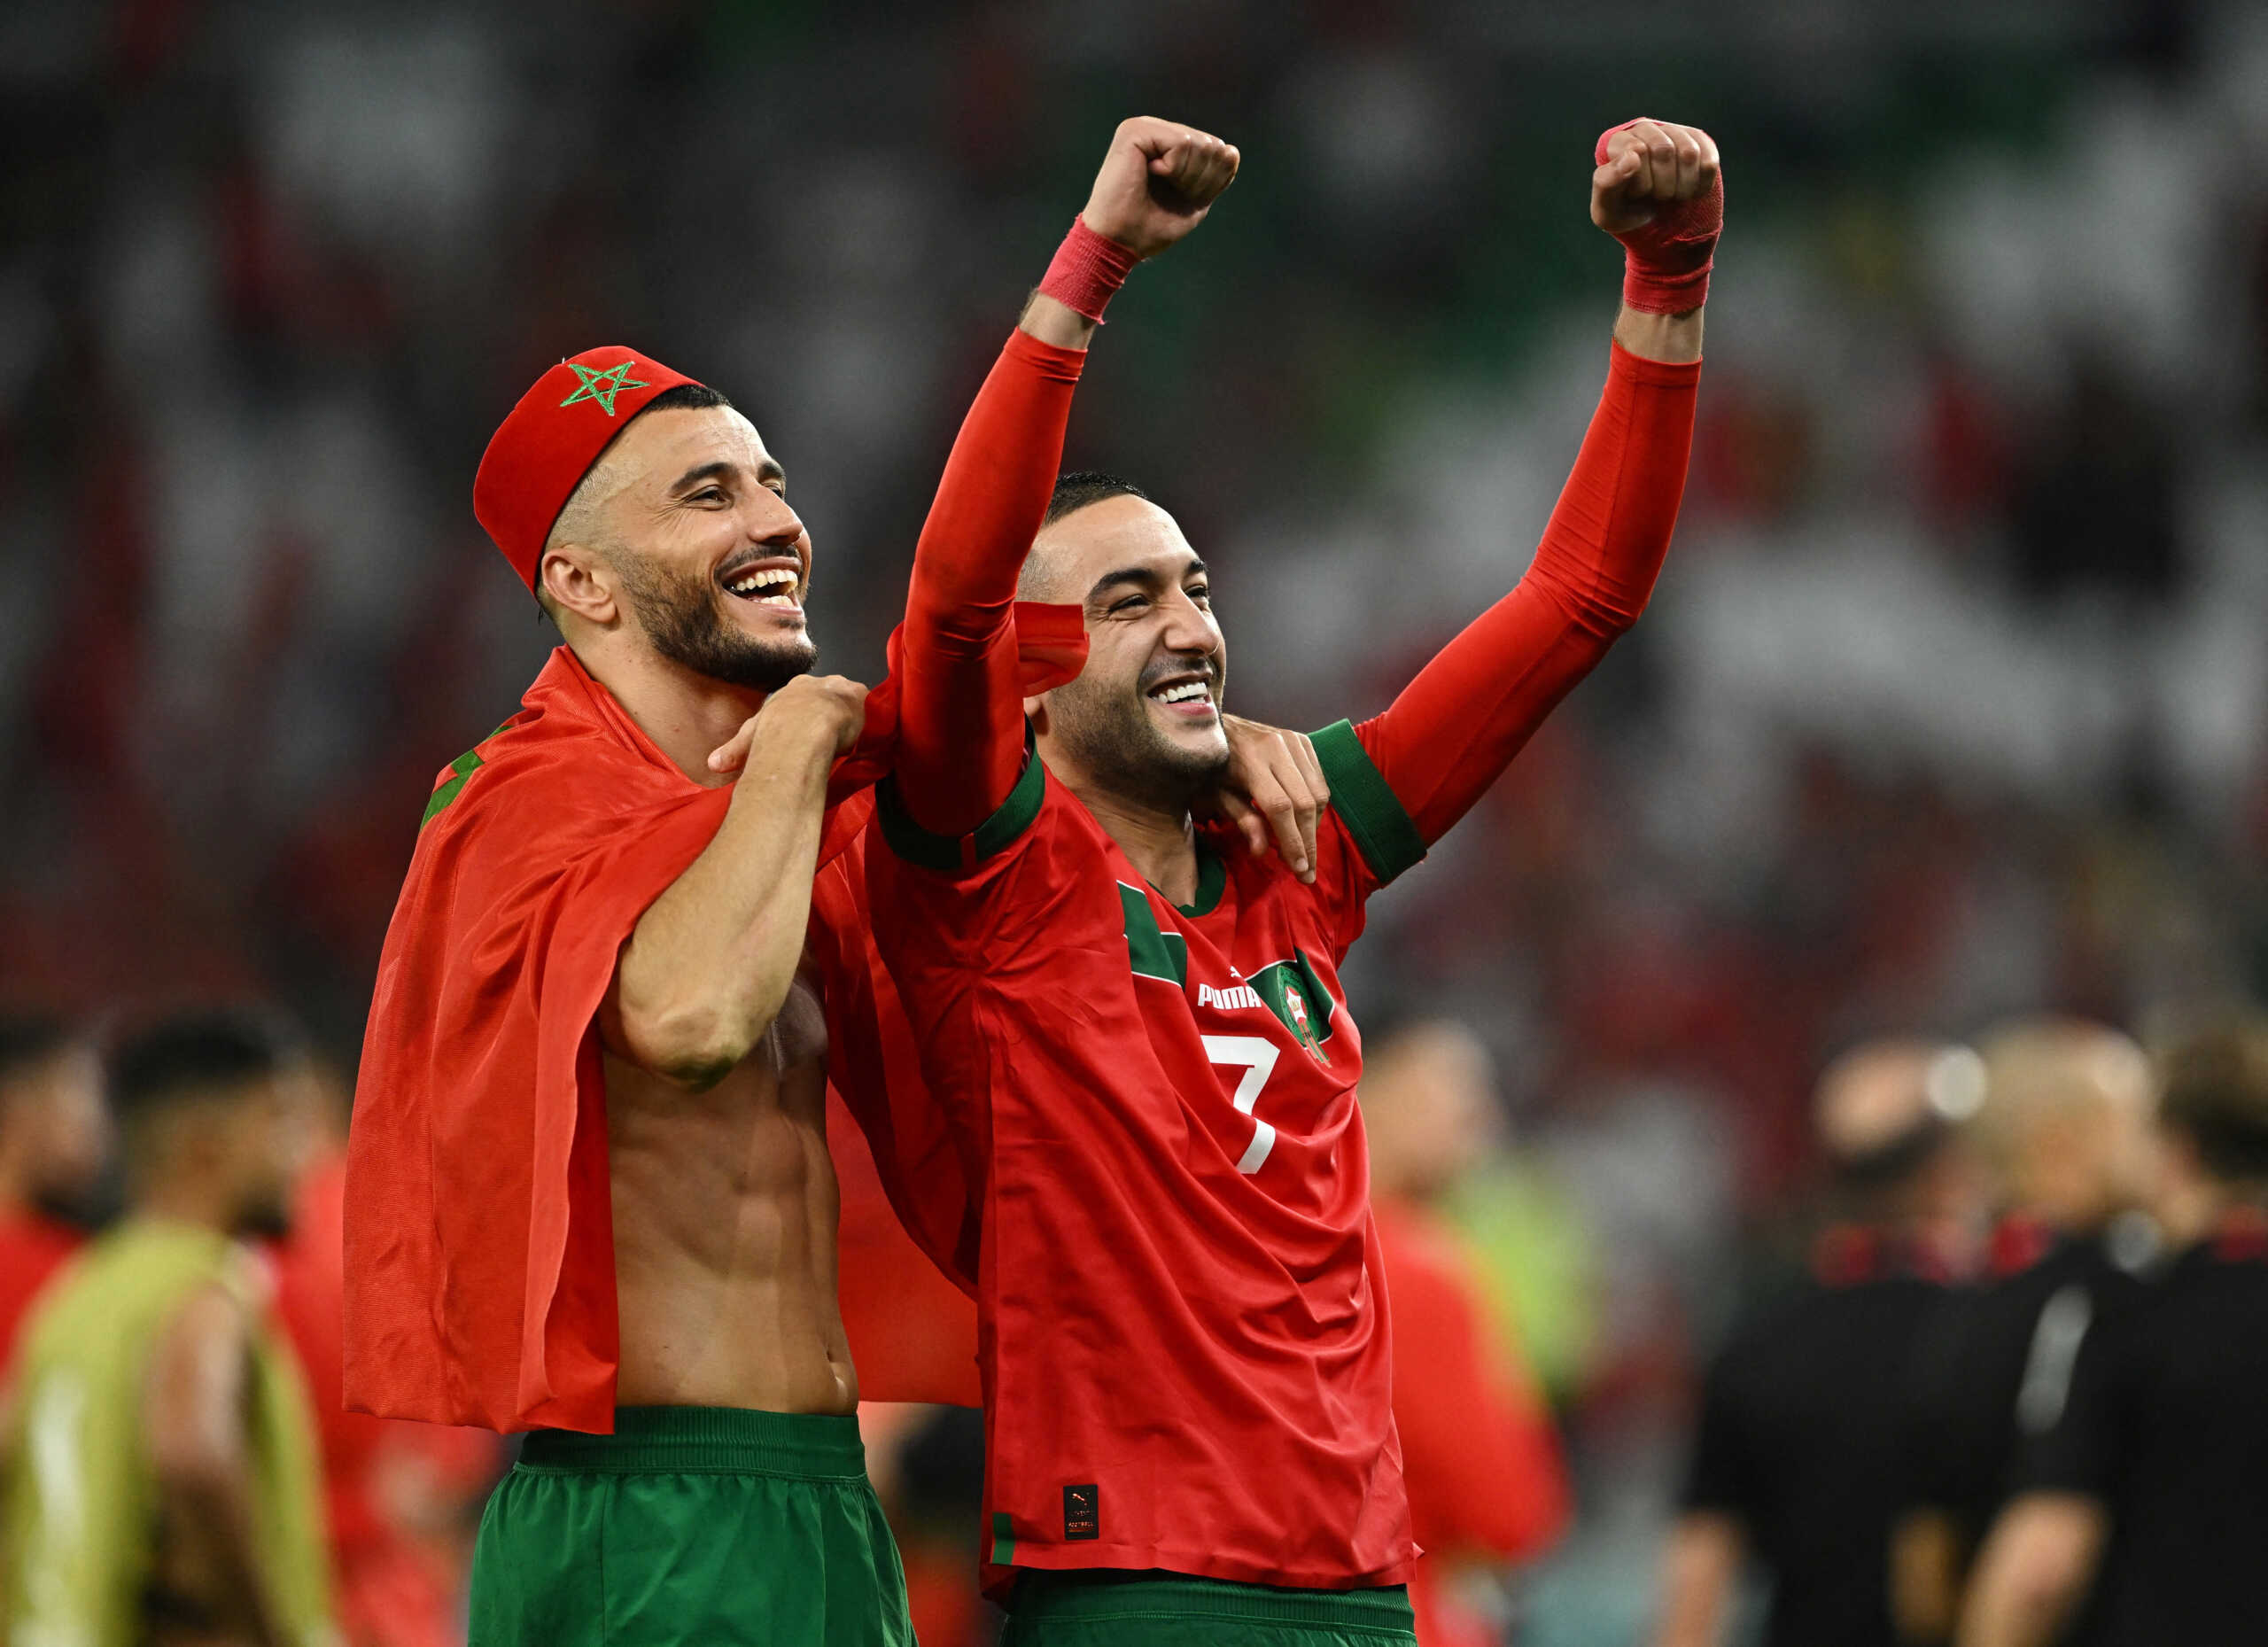 Μουντιάλ 2022: Ο Χακίμ Ζιγιές δωρίζει τα μπόνους από την εθνική ομάδα σε ανθρώπους που έχουν ανάγκη στο Μαρόκο